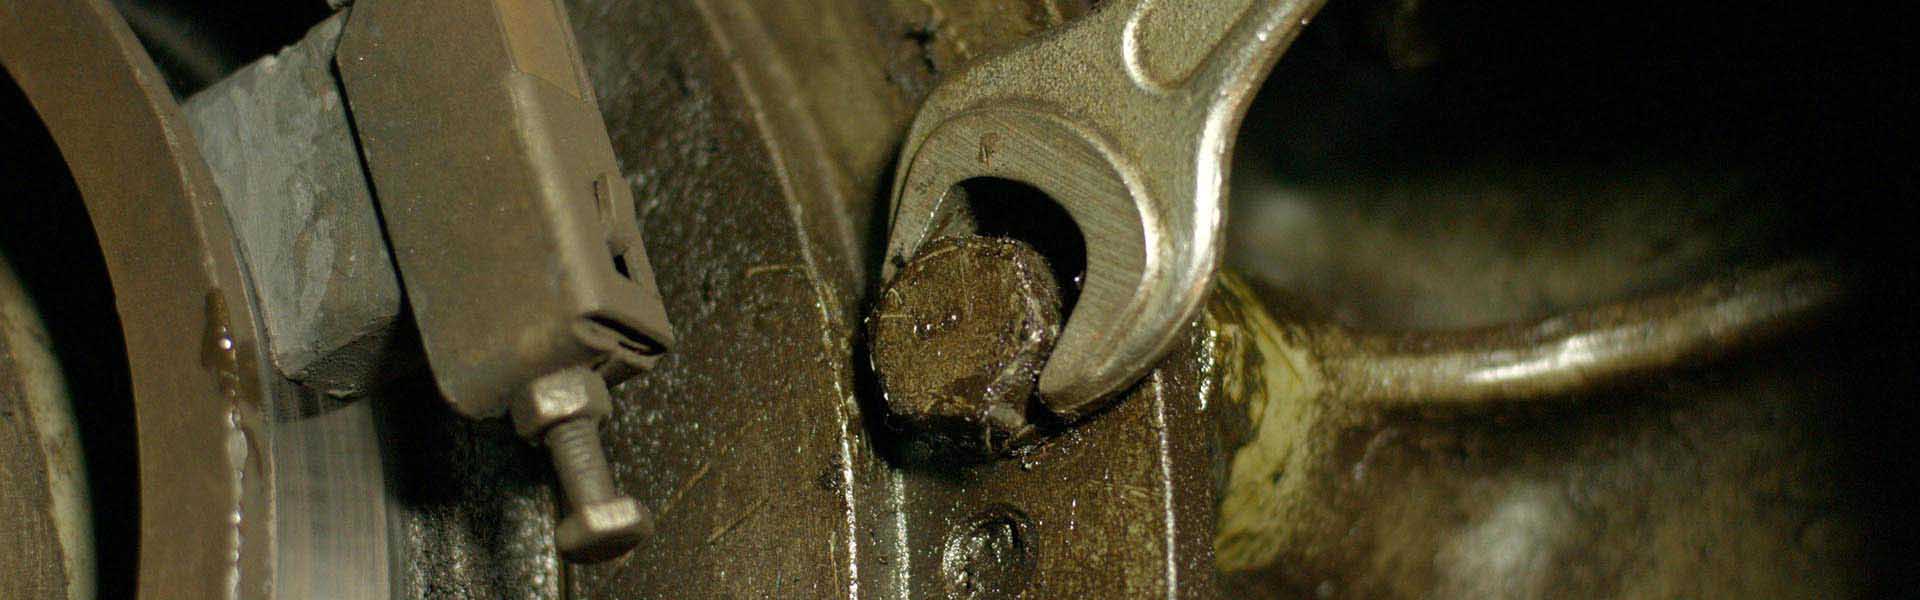 Reparación de Maquinaria Industrial | Maquinaria Anastasio